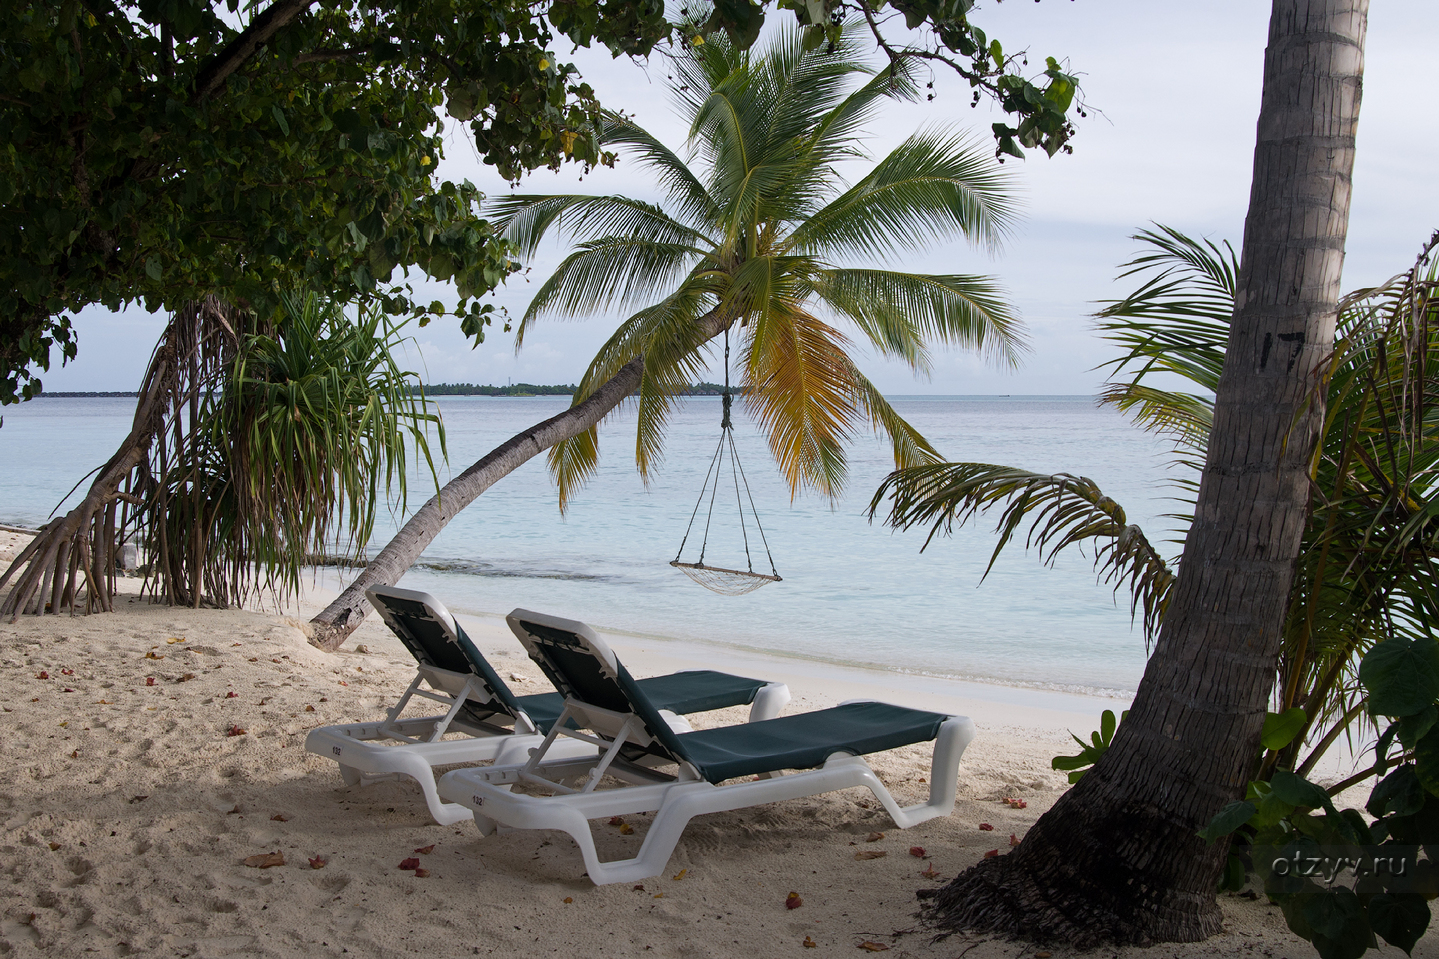 Vilamendhoo island resort. Vilamendhoo. Виламендху Айленд. Vilamendhoo Island Maldives. Vilamendhoo Island Resort 4 Мальдивы.